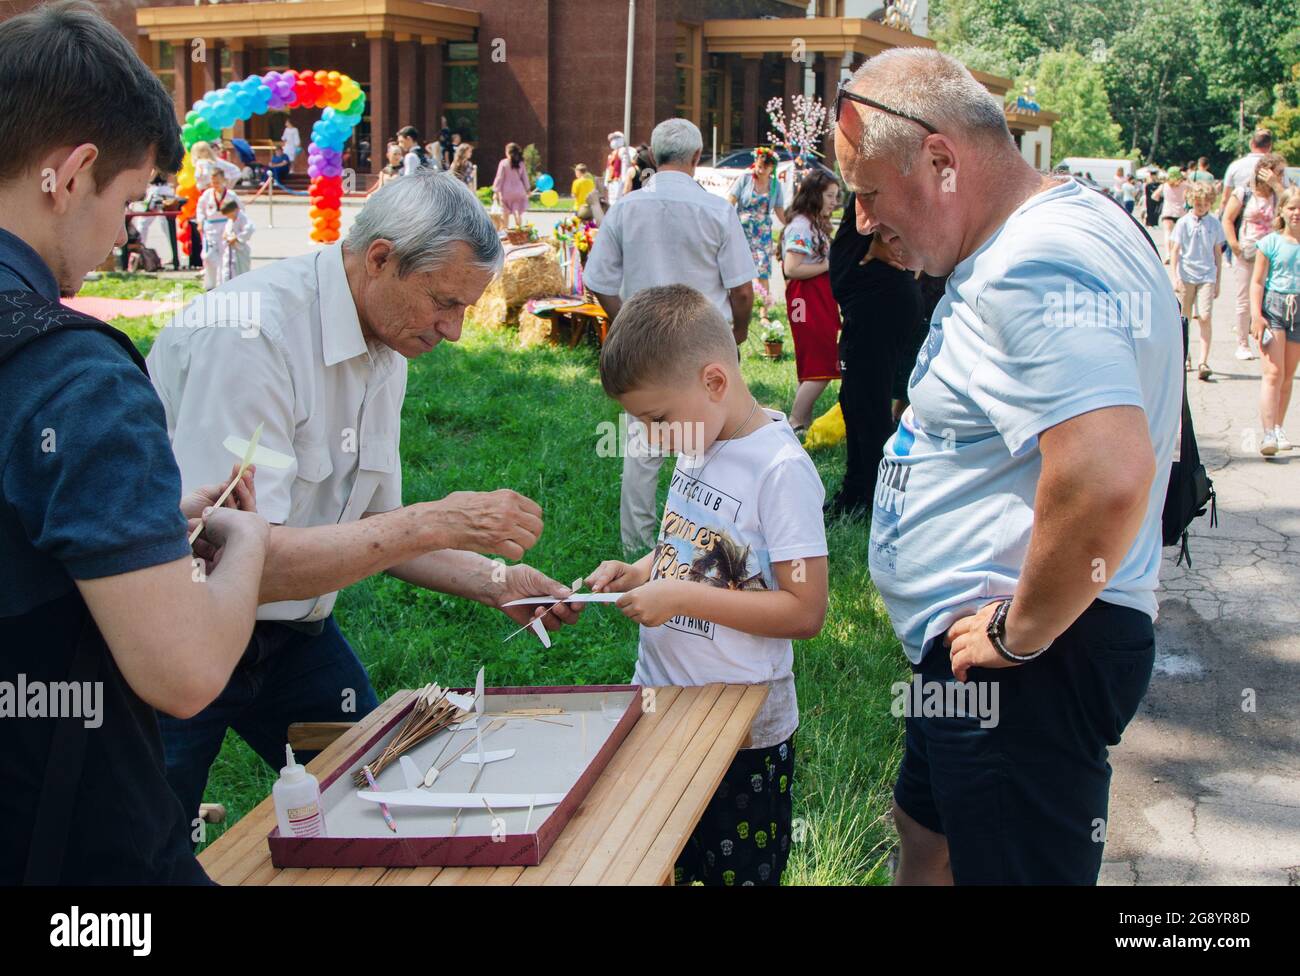 Zaporizhia, Ukraine- 19 juin 2021: Festival de la famille de charité: Un homme volontaire enseignant des garçons à faire des avions de carton jouet à l'atelier de modélisation en plein air Banque D'Images